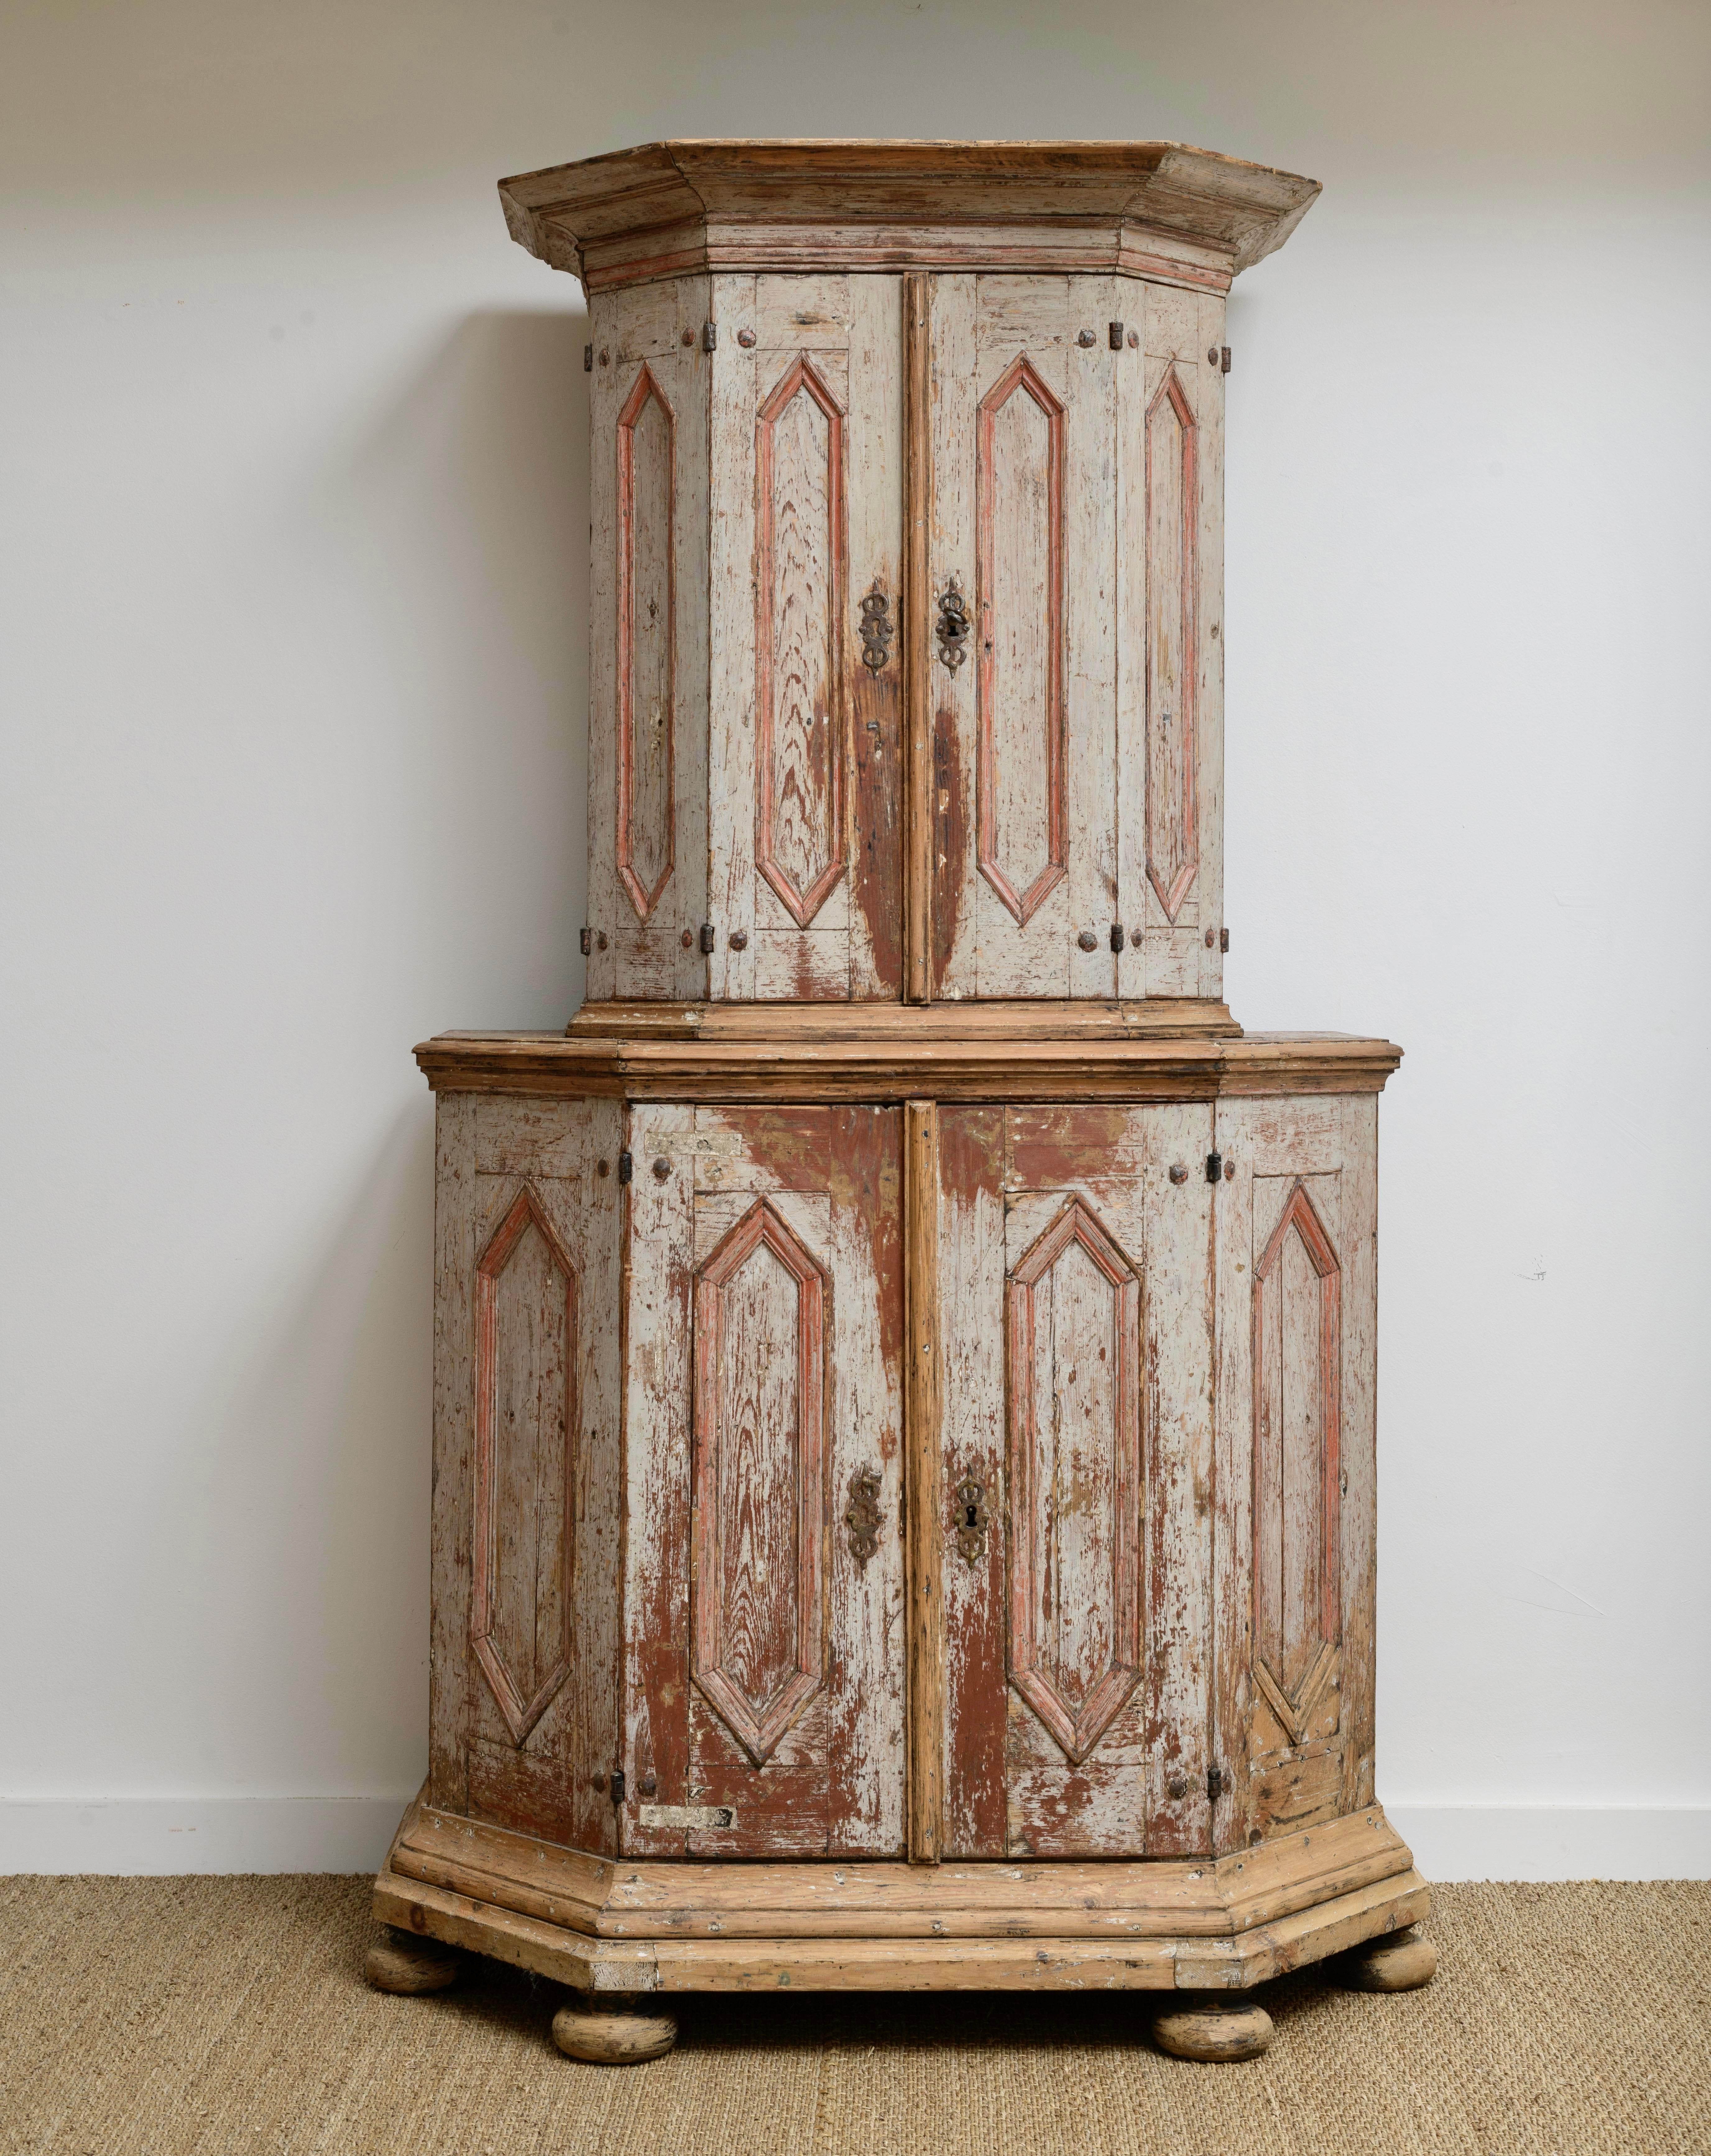 Ca.1750 Schwedisches Barockkabinett auf Schrank mit Ursprungsfarbe in den Tönen von Grau und hellroter Farbe.  
dieses Stück wurde nicht trocken geschabt, sondern hat durch den Gebrauch seit seiner Herstellung Farbverluste.  Wunderschöne